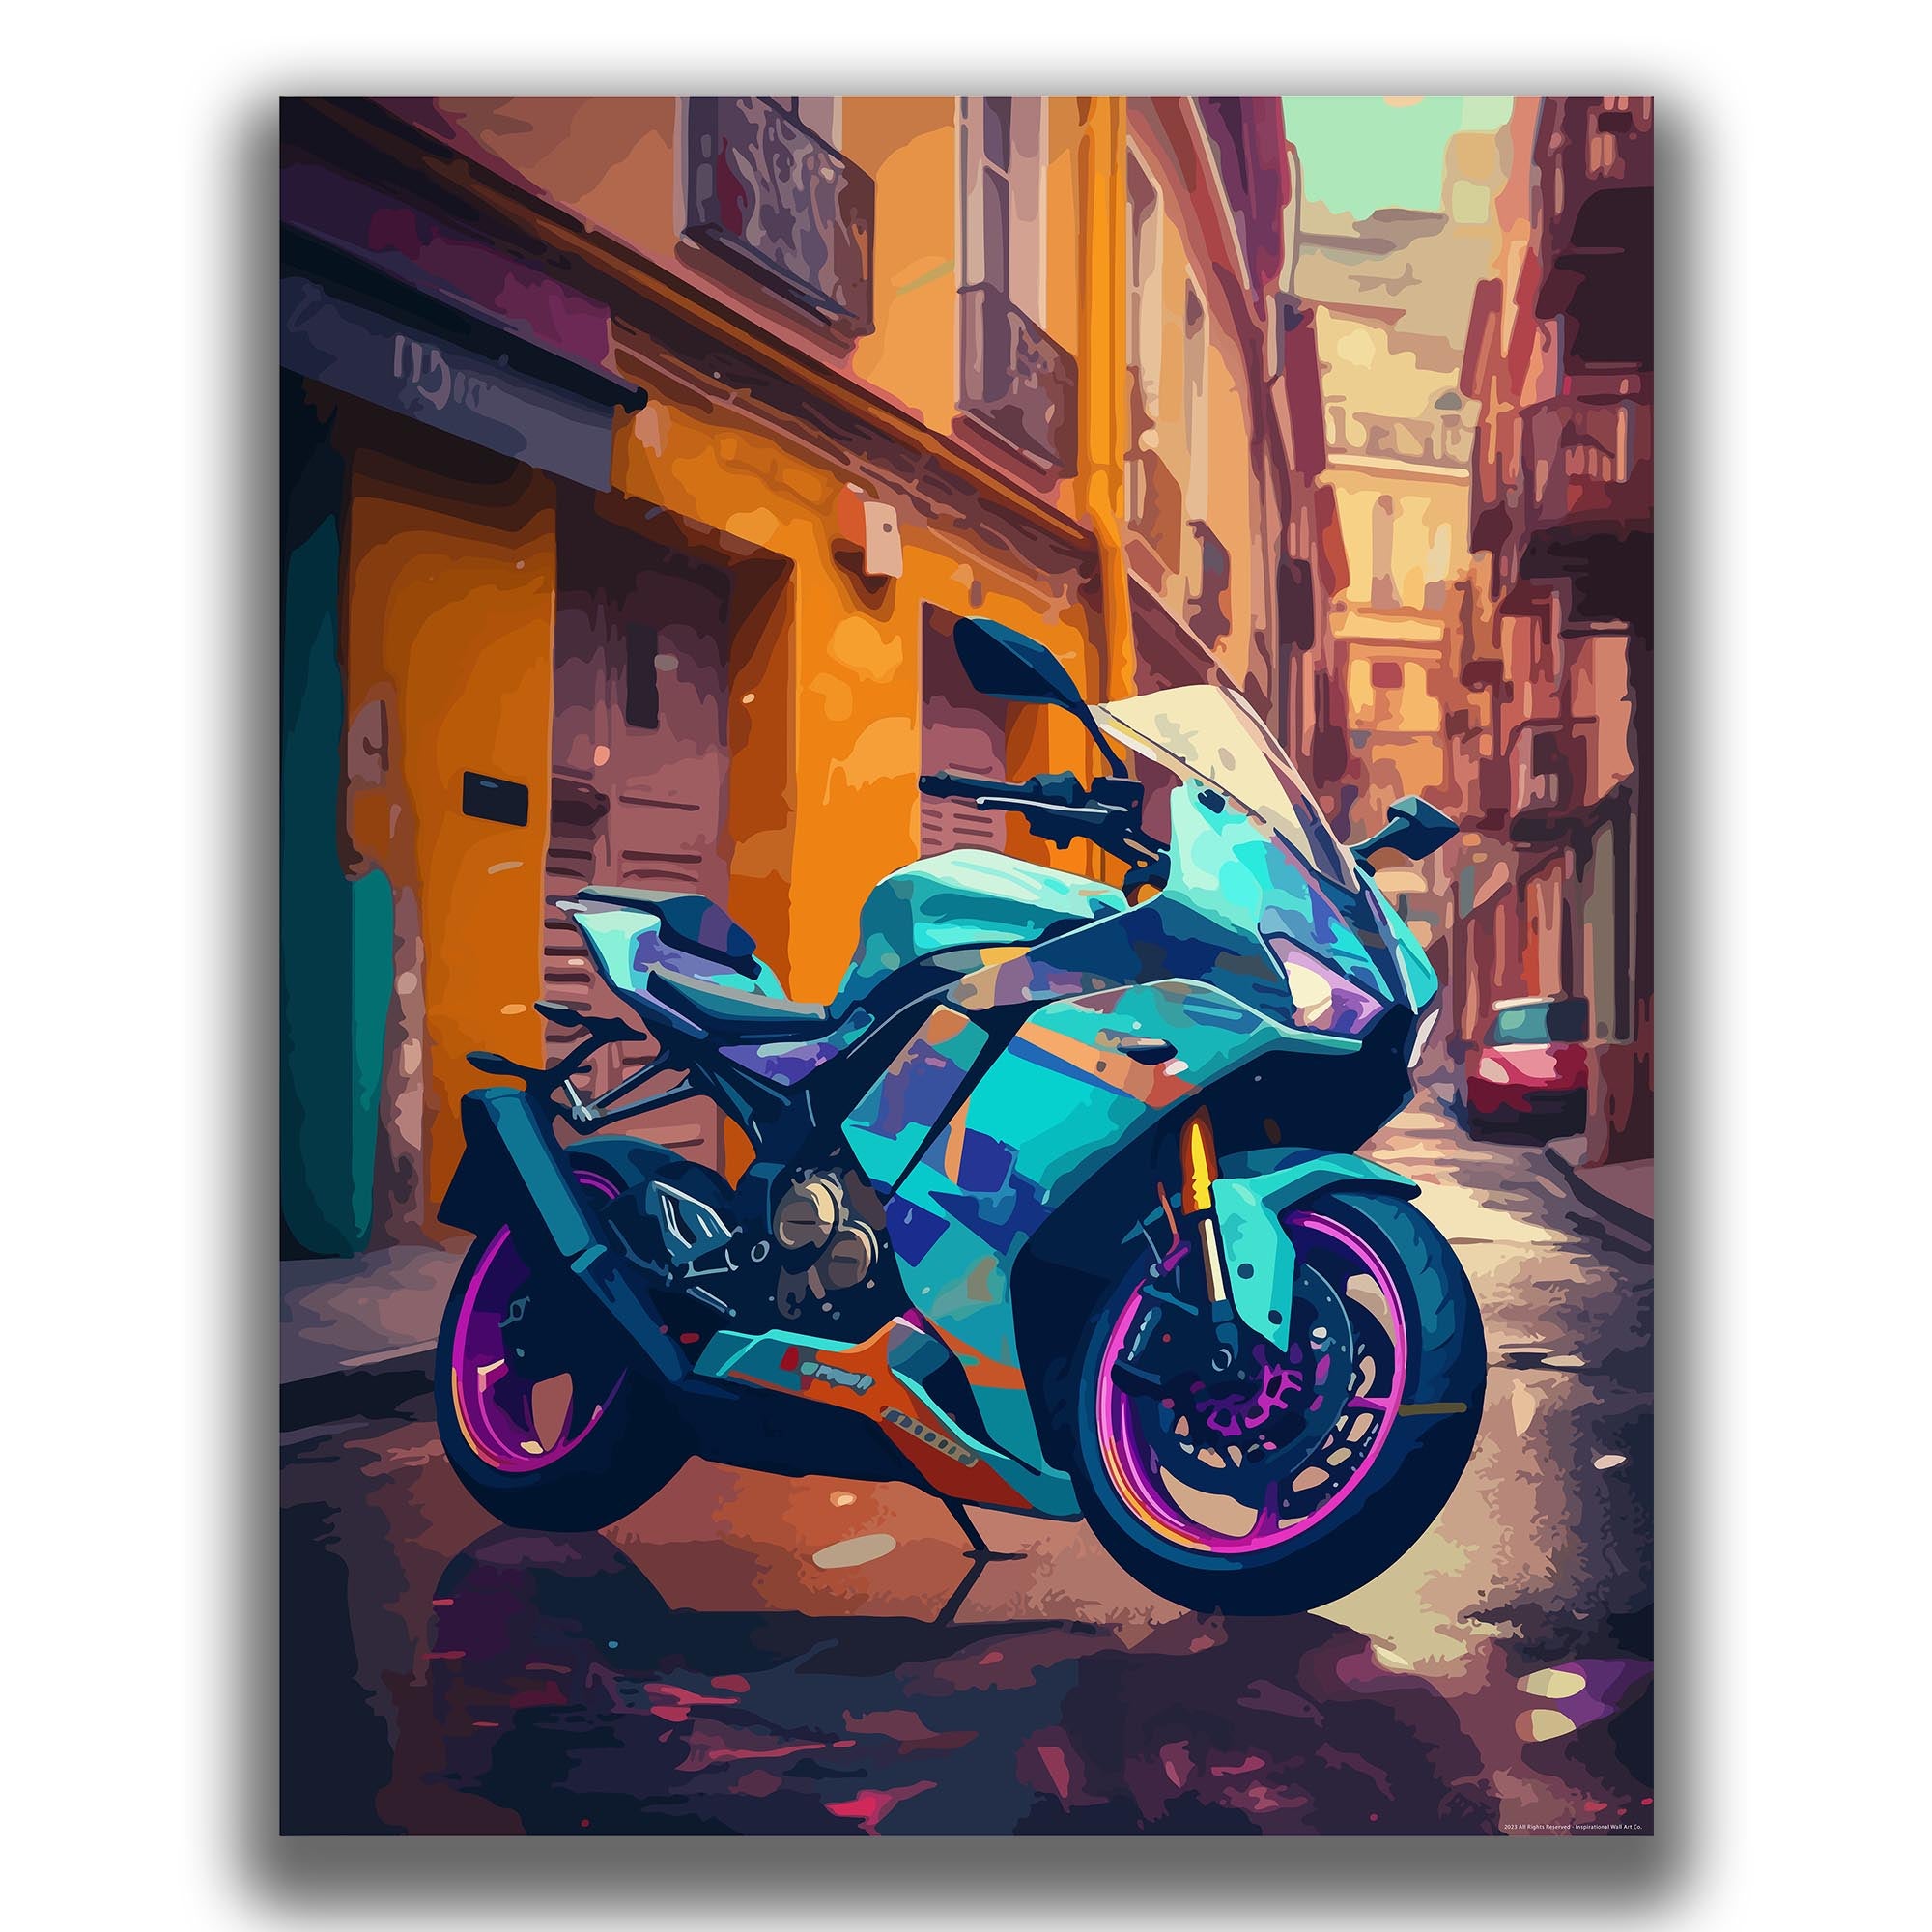 Daring - Motorcycle Poster